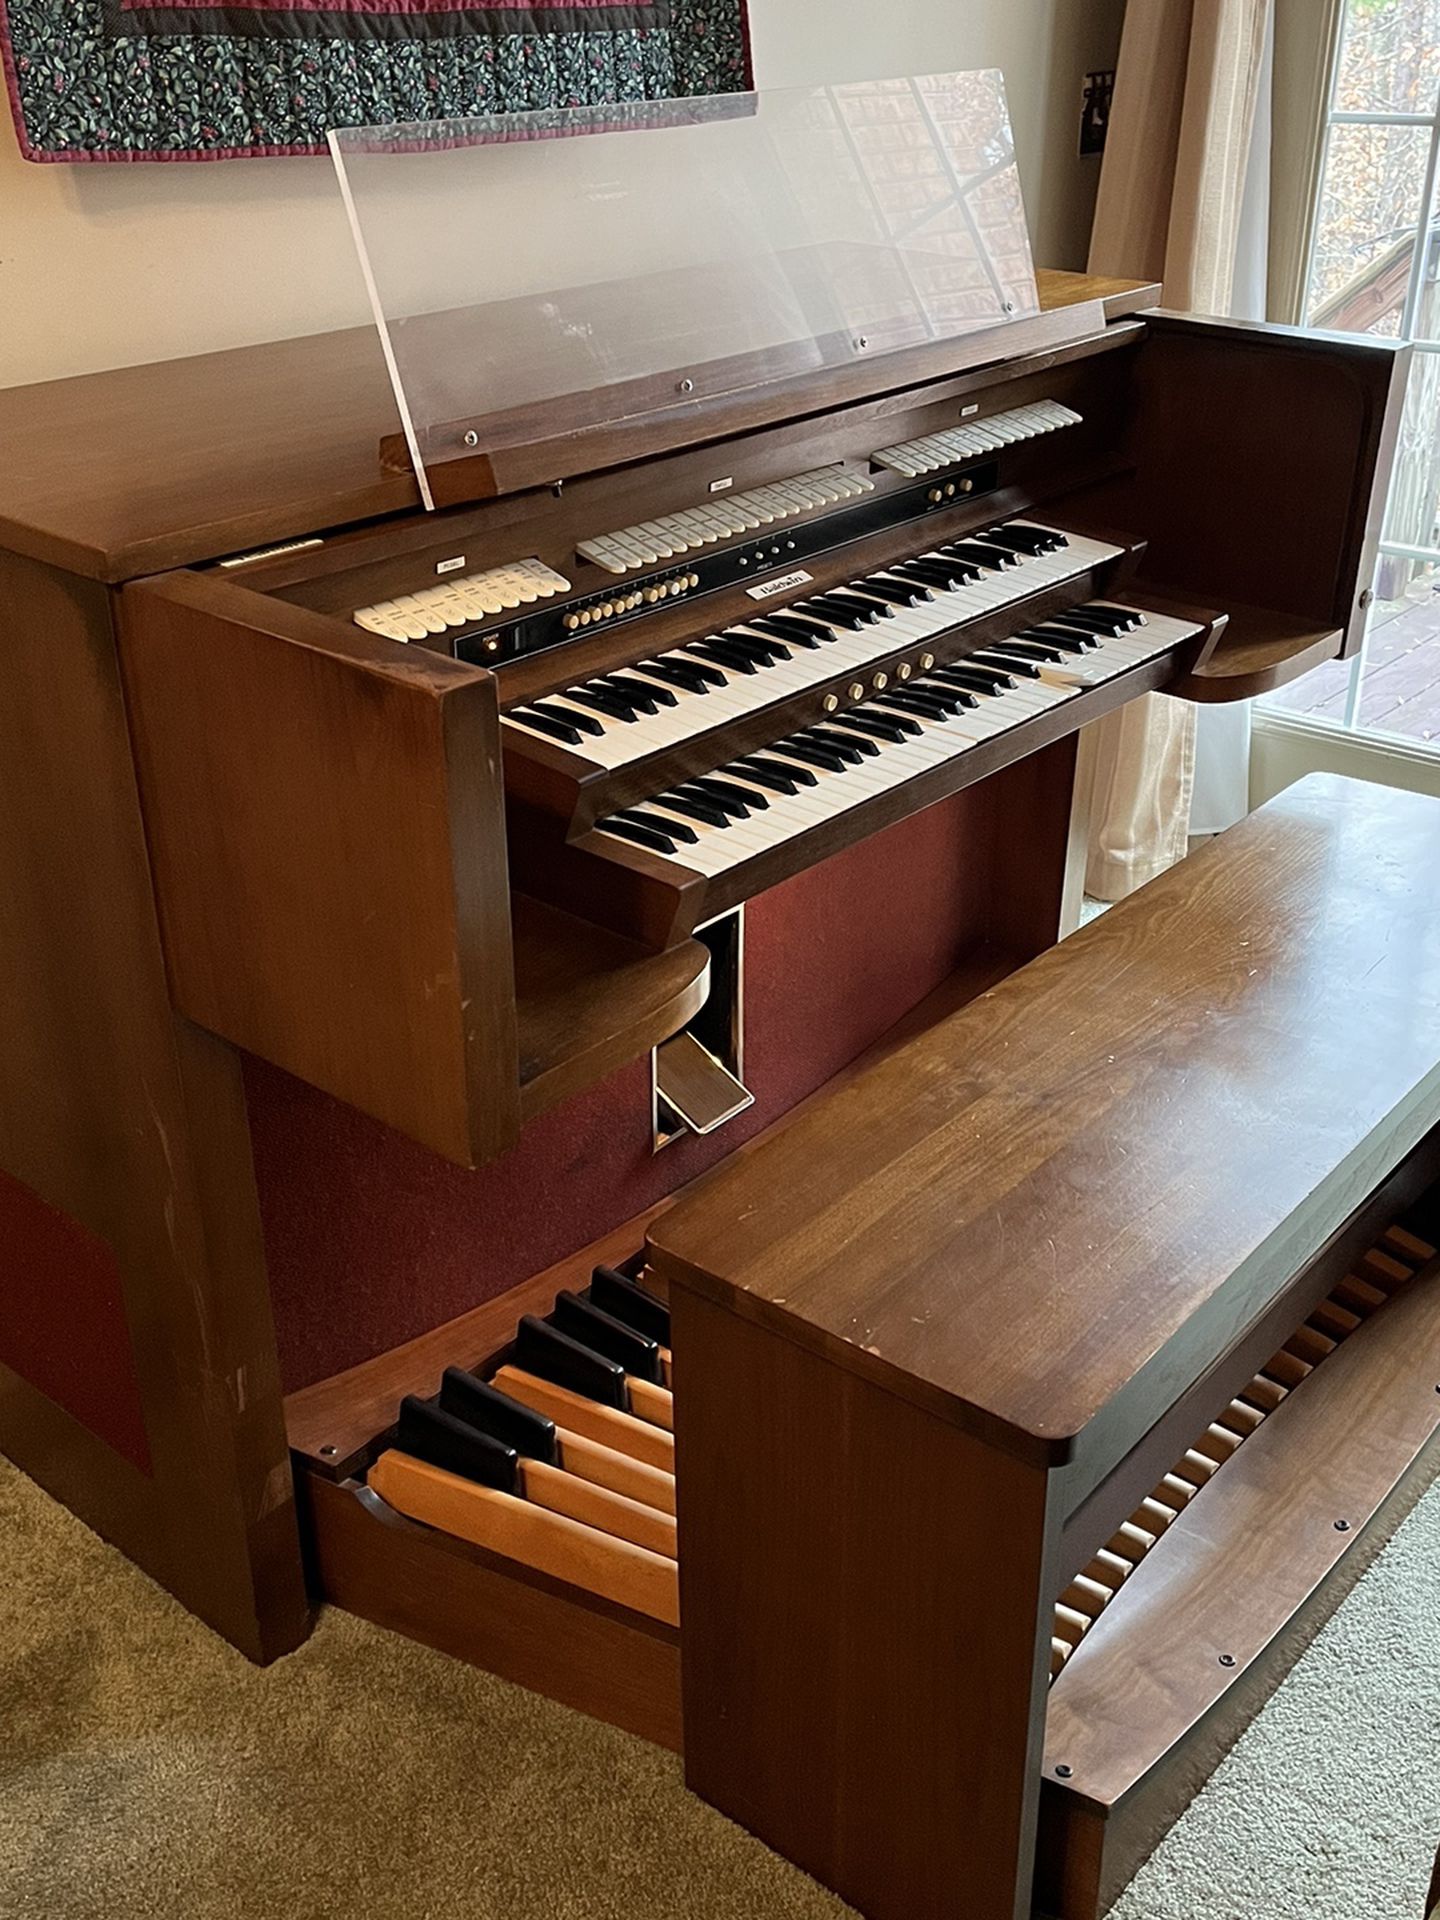 Baldwin Electric Organ